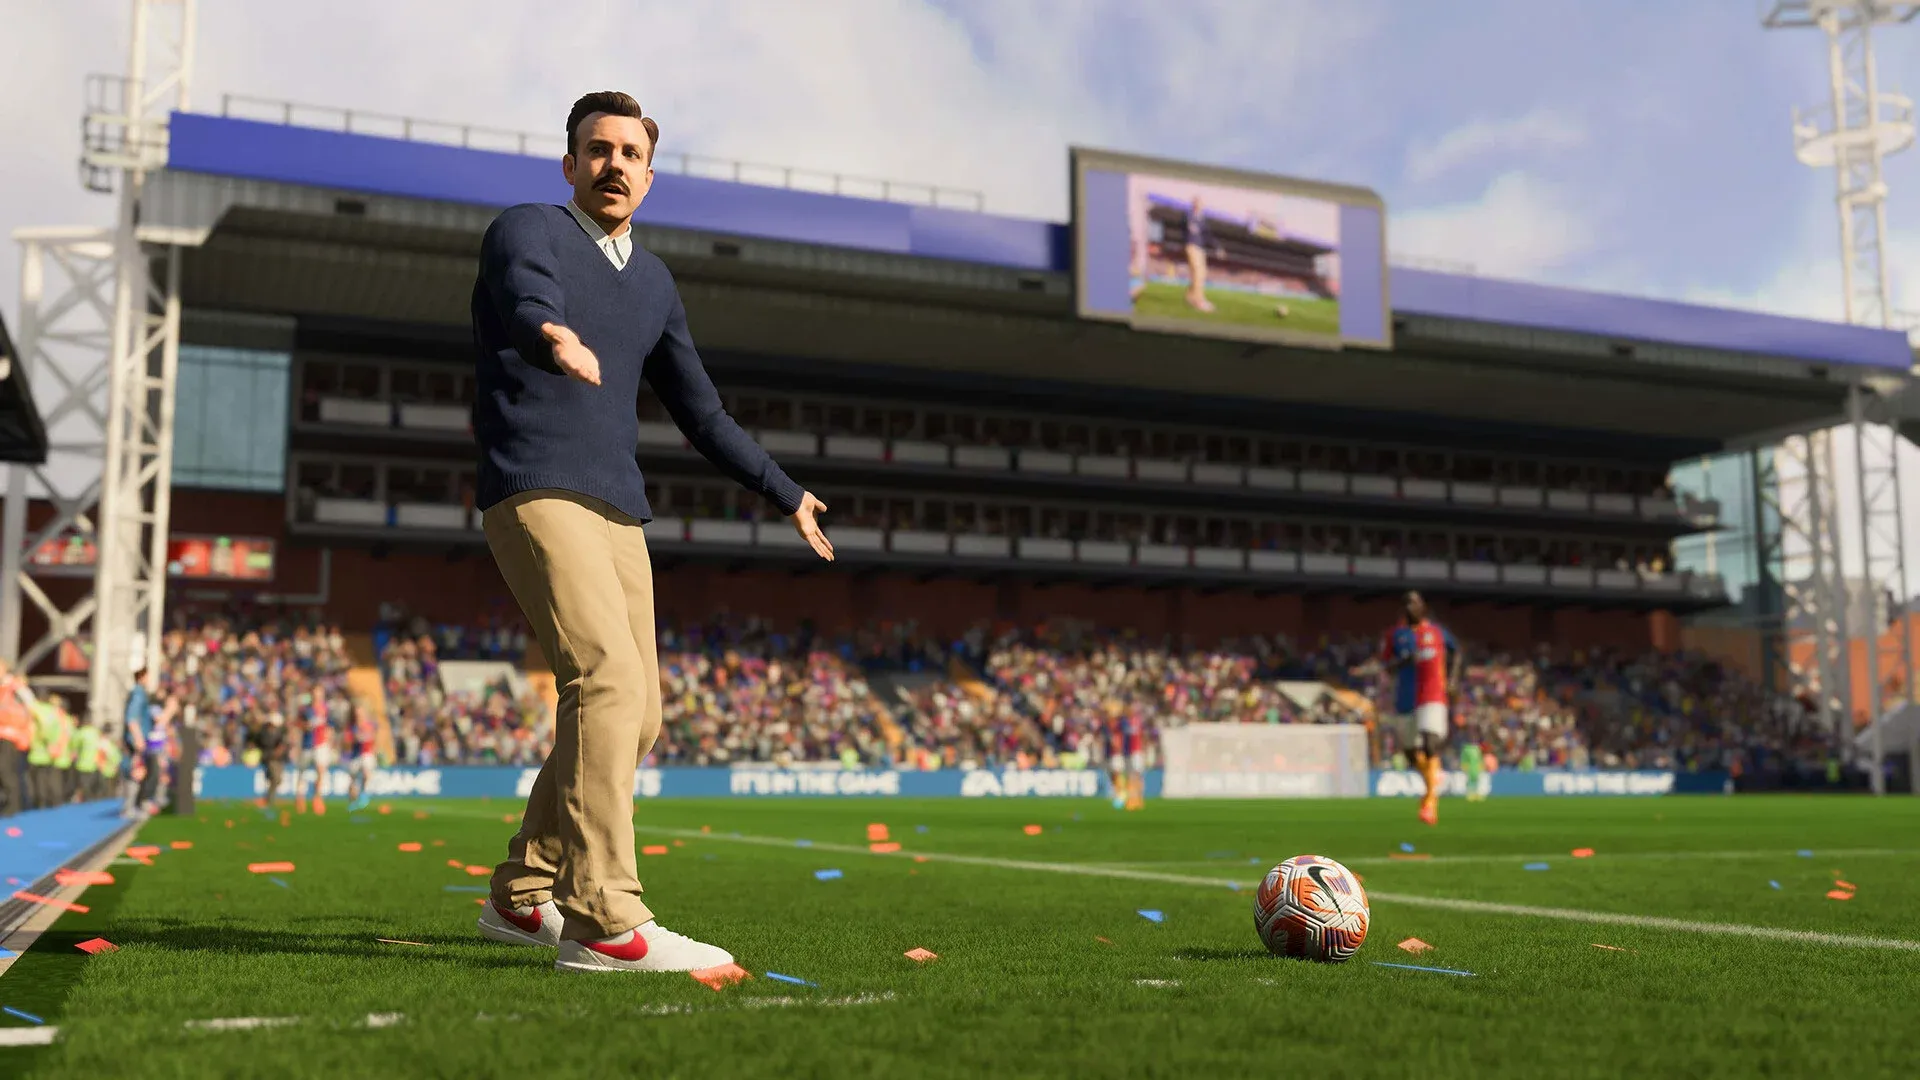 FIFA 23 chegou! Compre as versões para consoles a partir de R$ 263